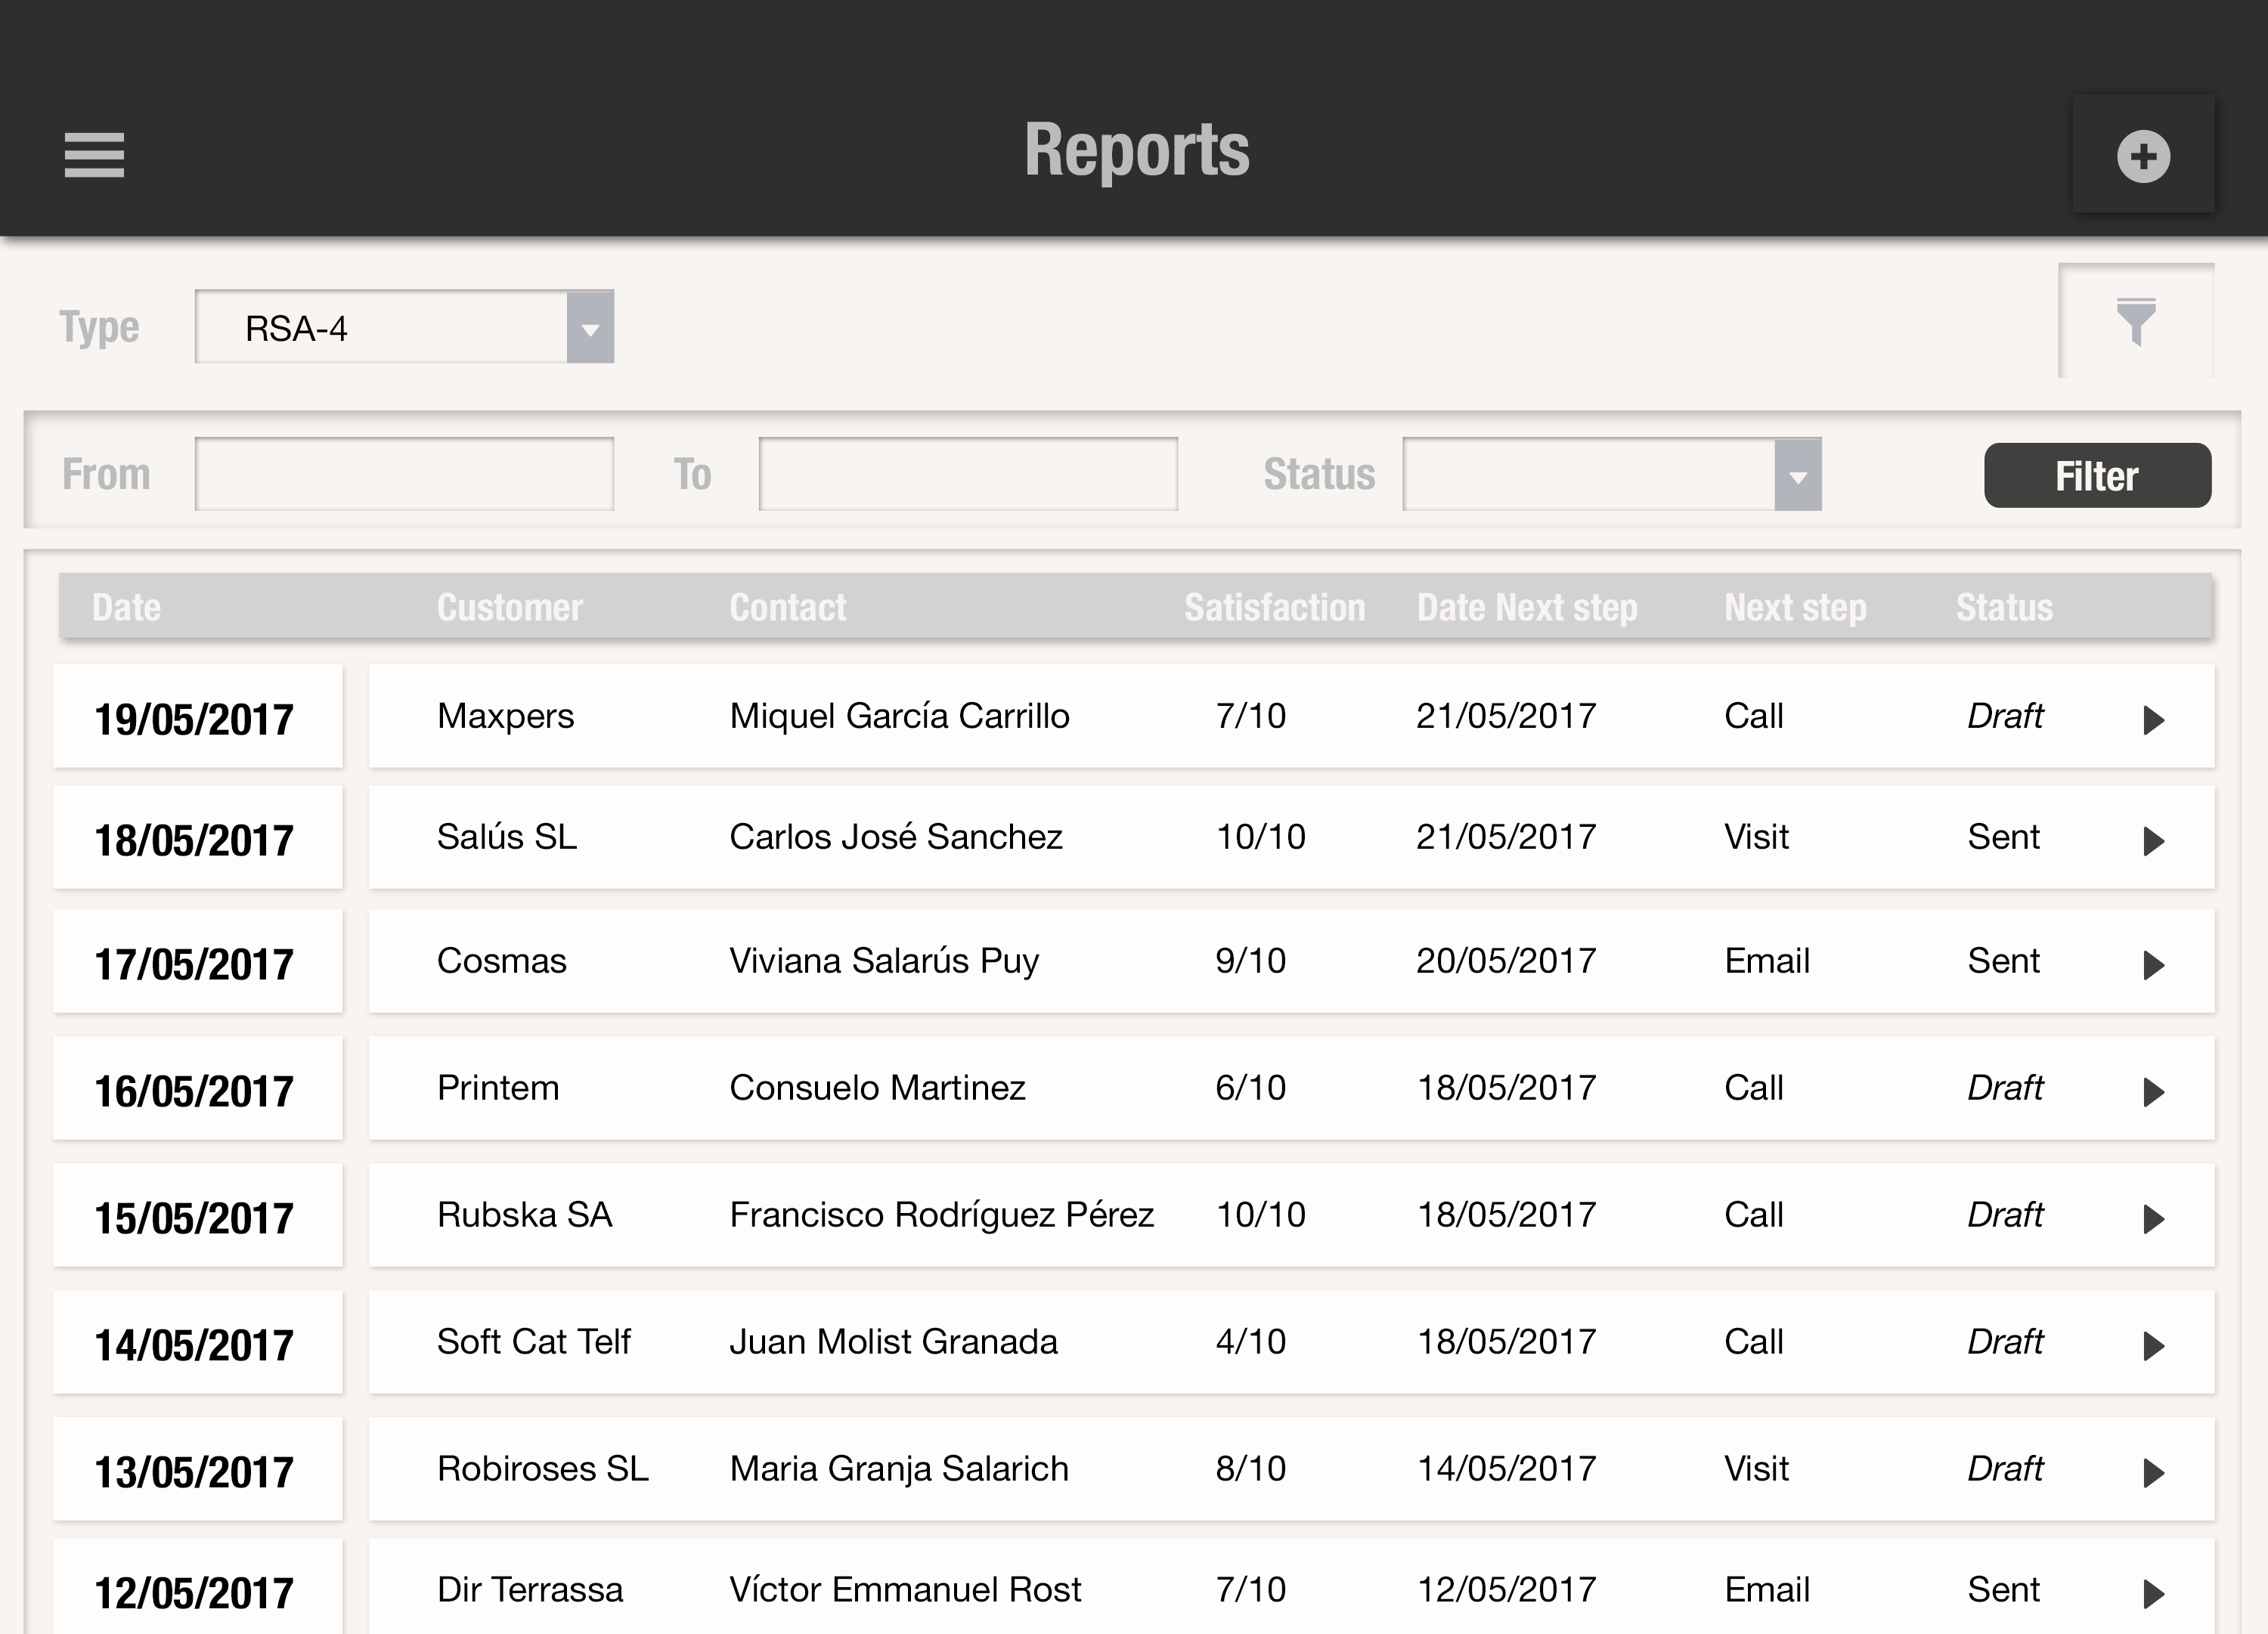 Encuentra fácilmente el listado y historial de todos los reports para acceder a ellos fácilmente y rápidamente para poder evaluar los resultados de las acciones comerciales como llamadas, emails, eventos y visitas comerciales con uSell CRM tienes el máximo control comercial